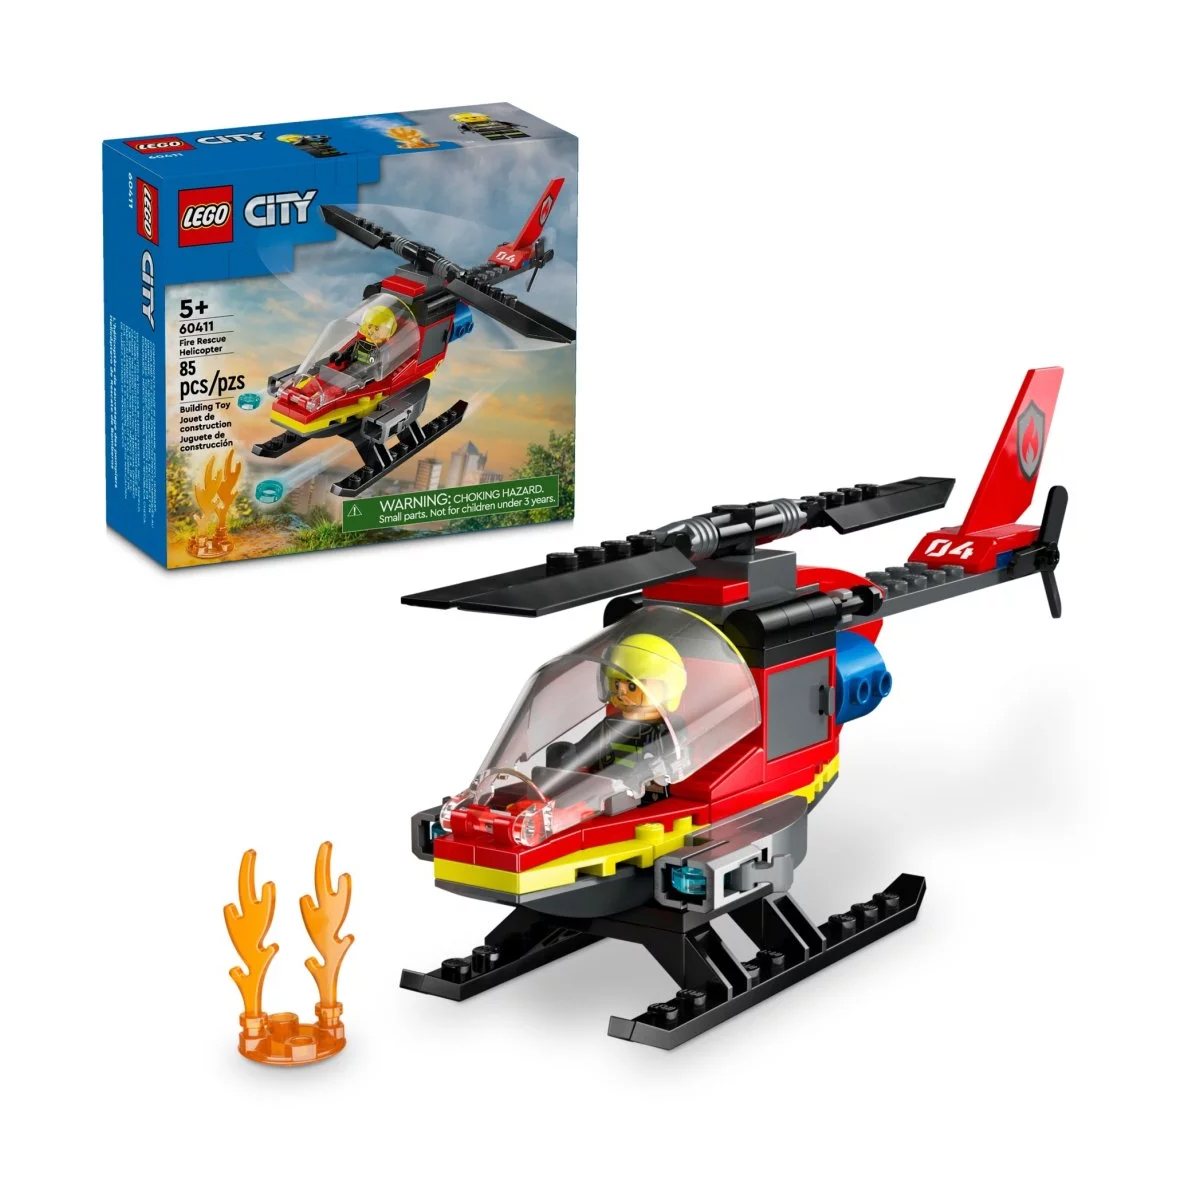 Конструктор Lego City Fire Rescue Helicopter 60411, 85 деталей конструктор lego city 60410 мотоцикл пожарно спасательных служб